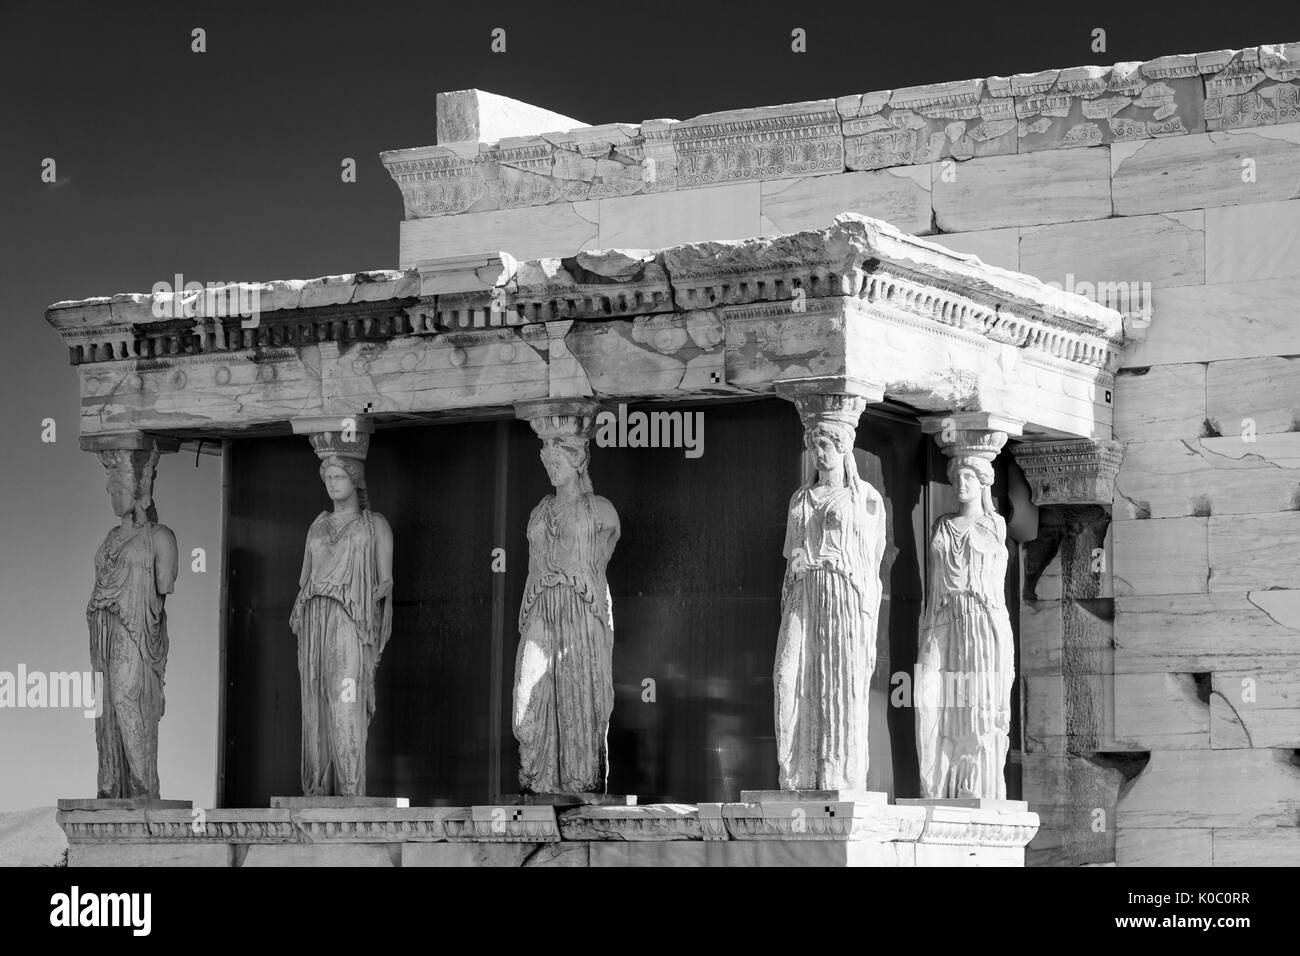 Les figures d'Athena ligne le porche à caryatide de l'Erechtleion sur l'Acropole, Athènes Grèce Attica Banque D'Images